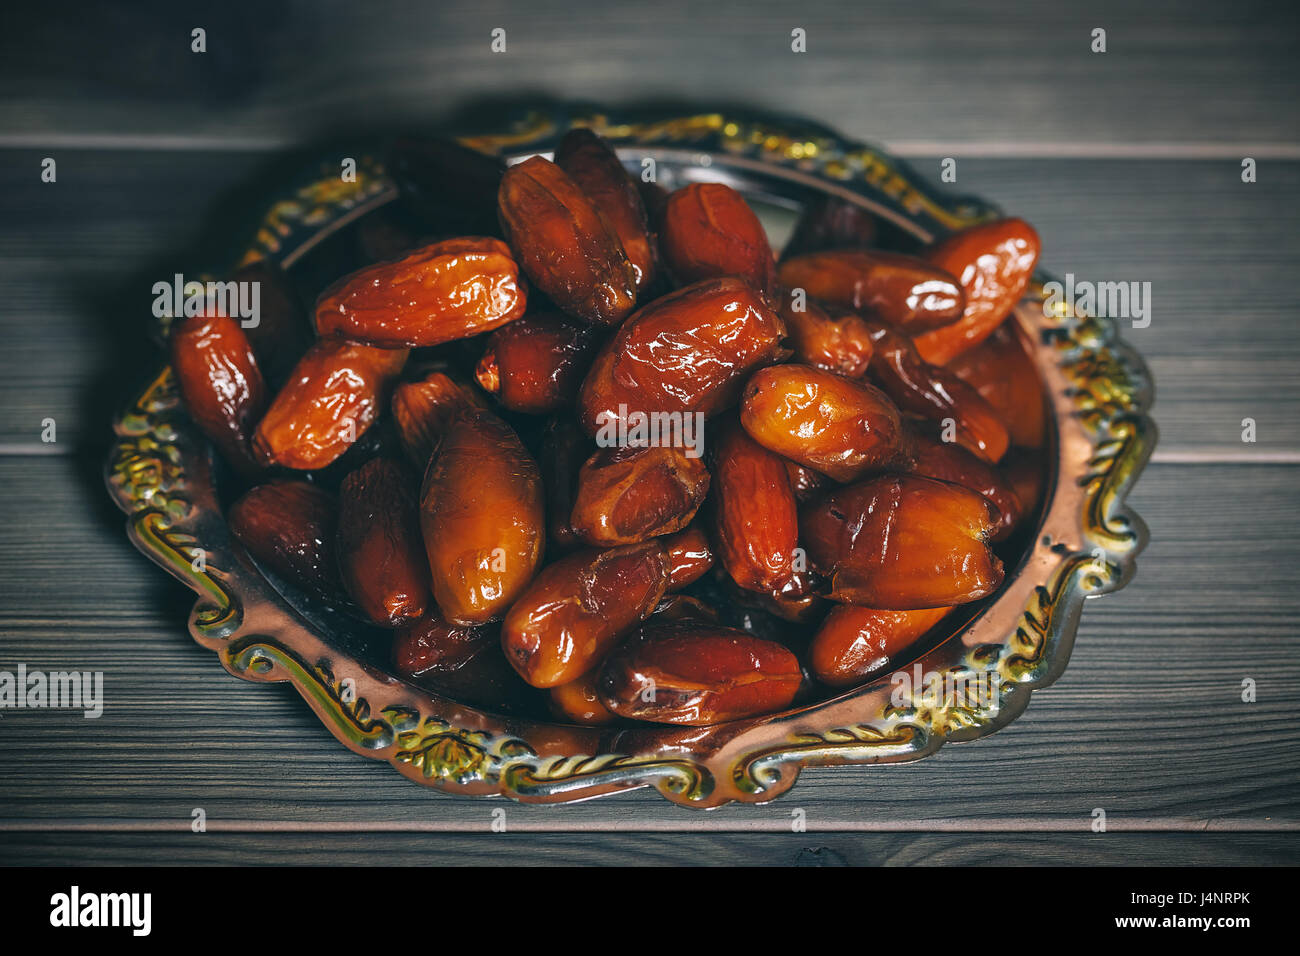 Schöner Hintergrund mit getrocknete Datteln auf einem silbernen Tablett auf hölzernen Hintergrund. Das muslimische Opferfest des Heiligen Monats Ramadan Kareem. Freiraum für Ihre Stockfoto